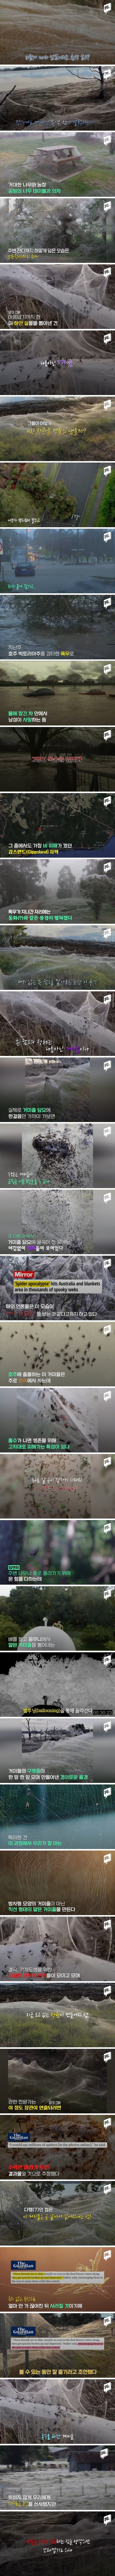 수백만 거미떼가 빚어낸 흰색 담요.jpg